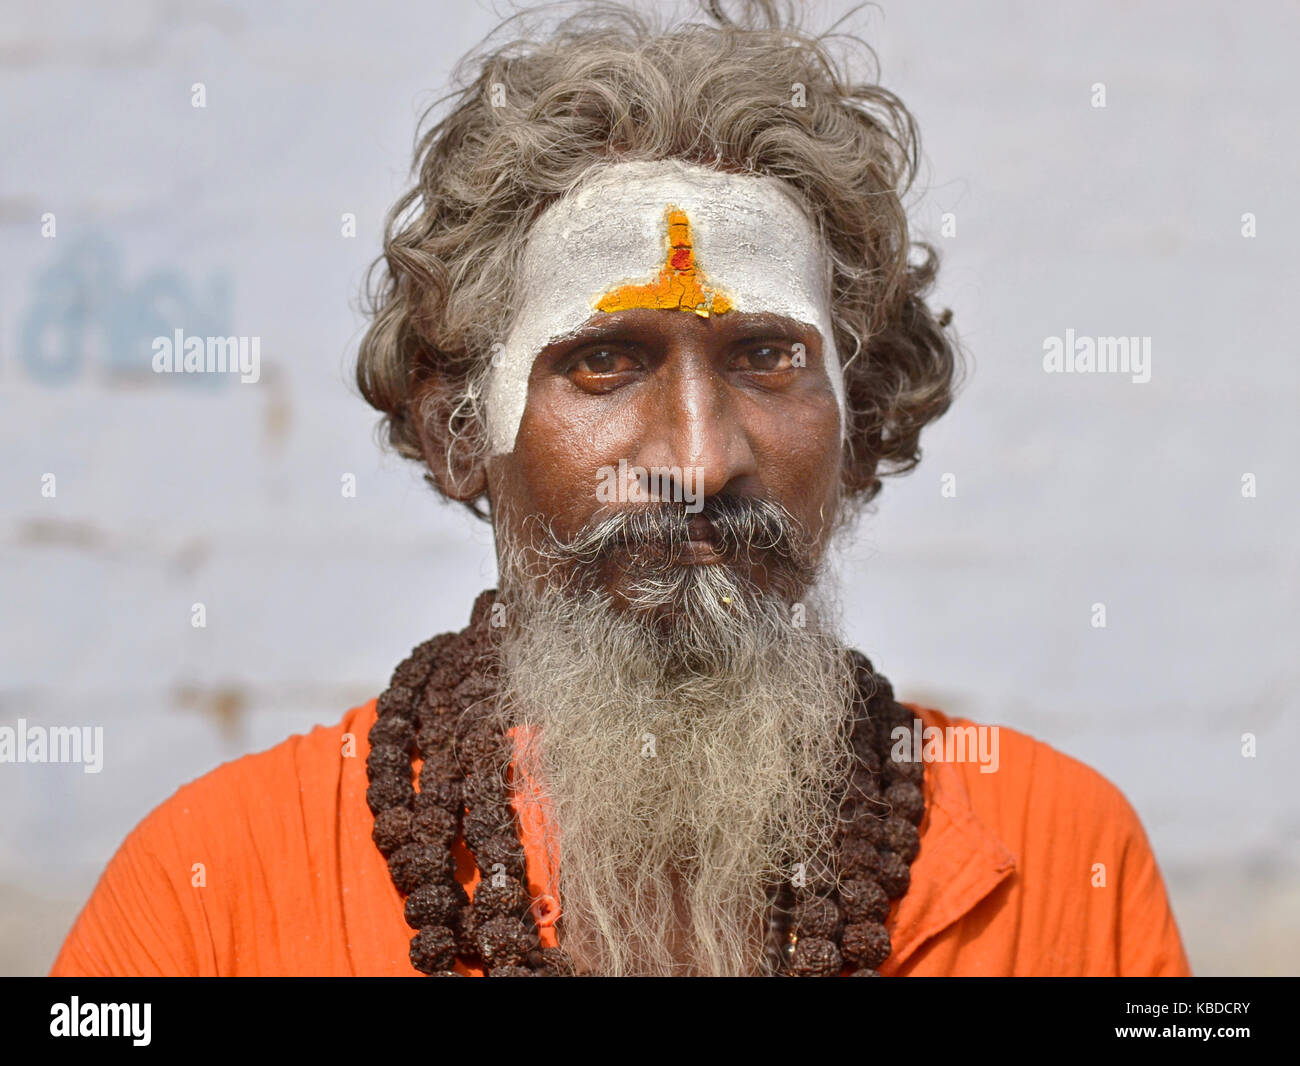 Di mezza età shaivite sadhu (hindu santo uomo che adora shiva) con bianco vibhuti, indossando le stringhe della grande preghiera rudraksha talloni oltre la sua tunica arancione Foto Stock